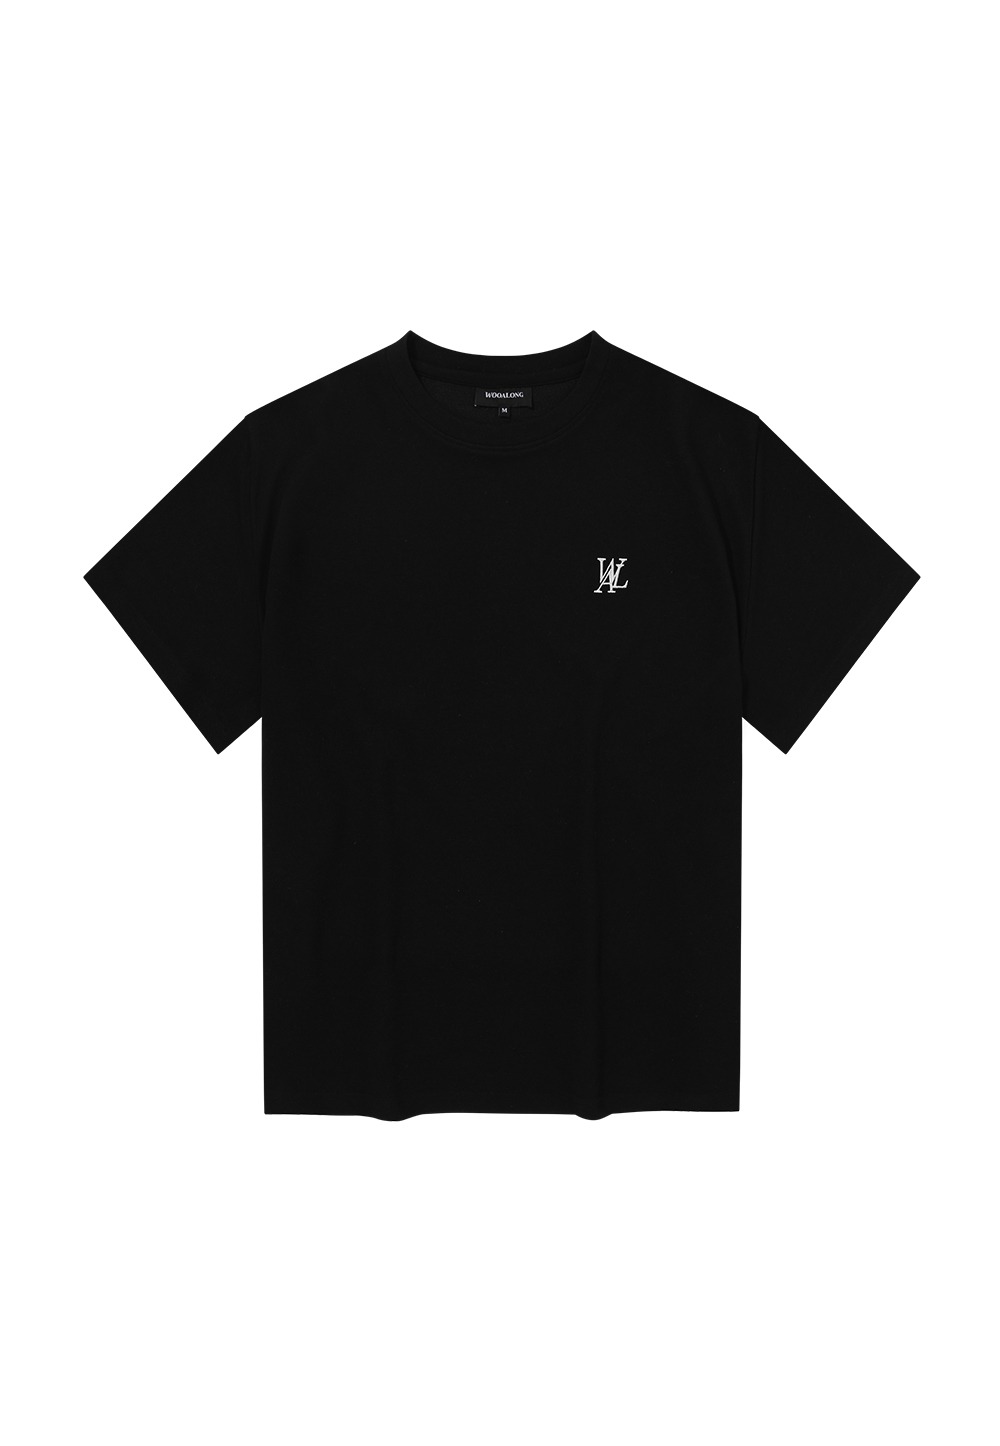 OG logo over fit T-shirts - BLACK